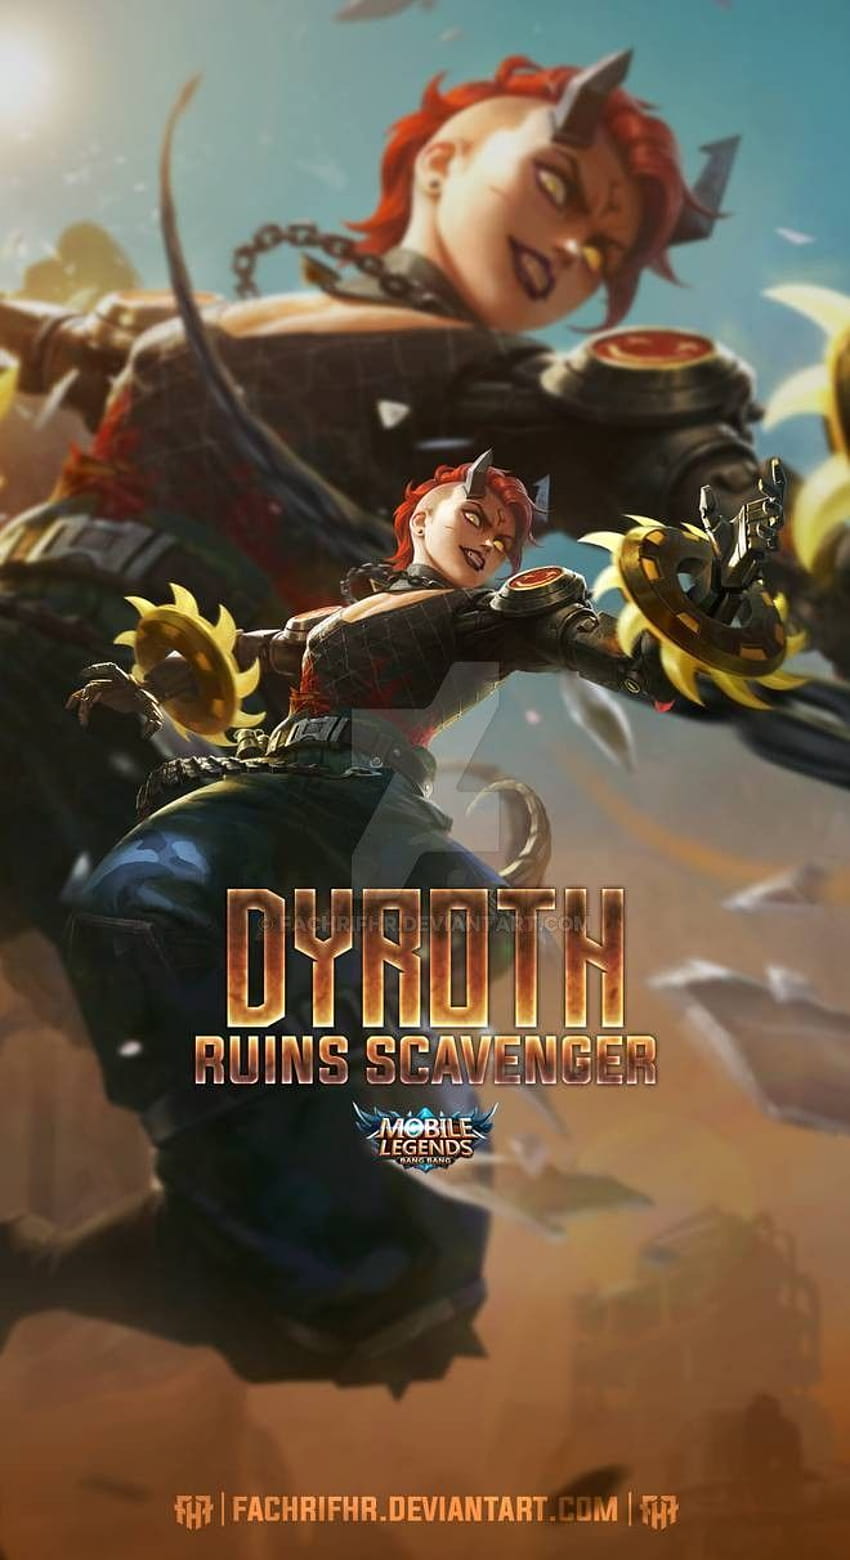 Dyroth Ruins Scavenger par FachriFHR en 2021, logo mobile legends 2021 Fond d'écran de téléphone HD